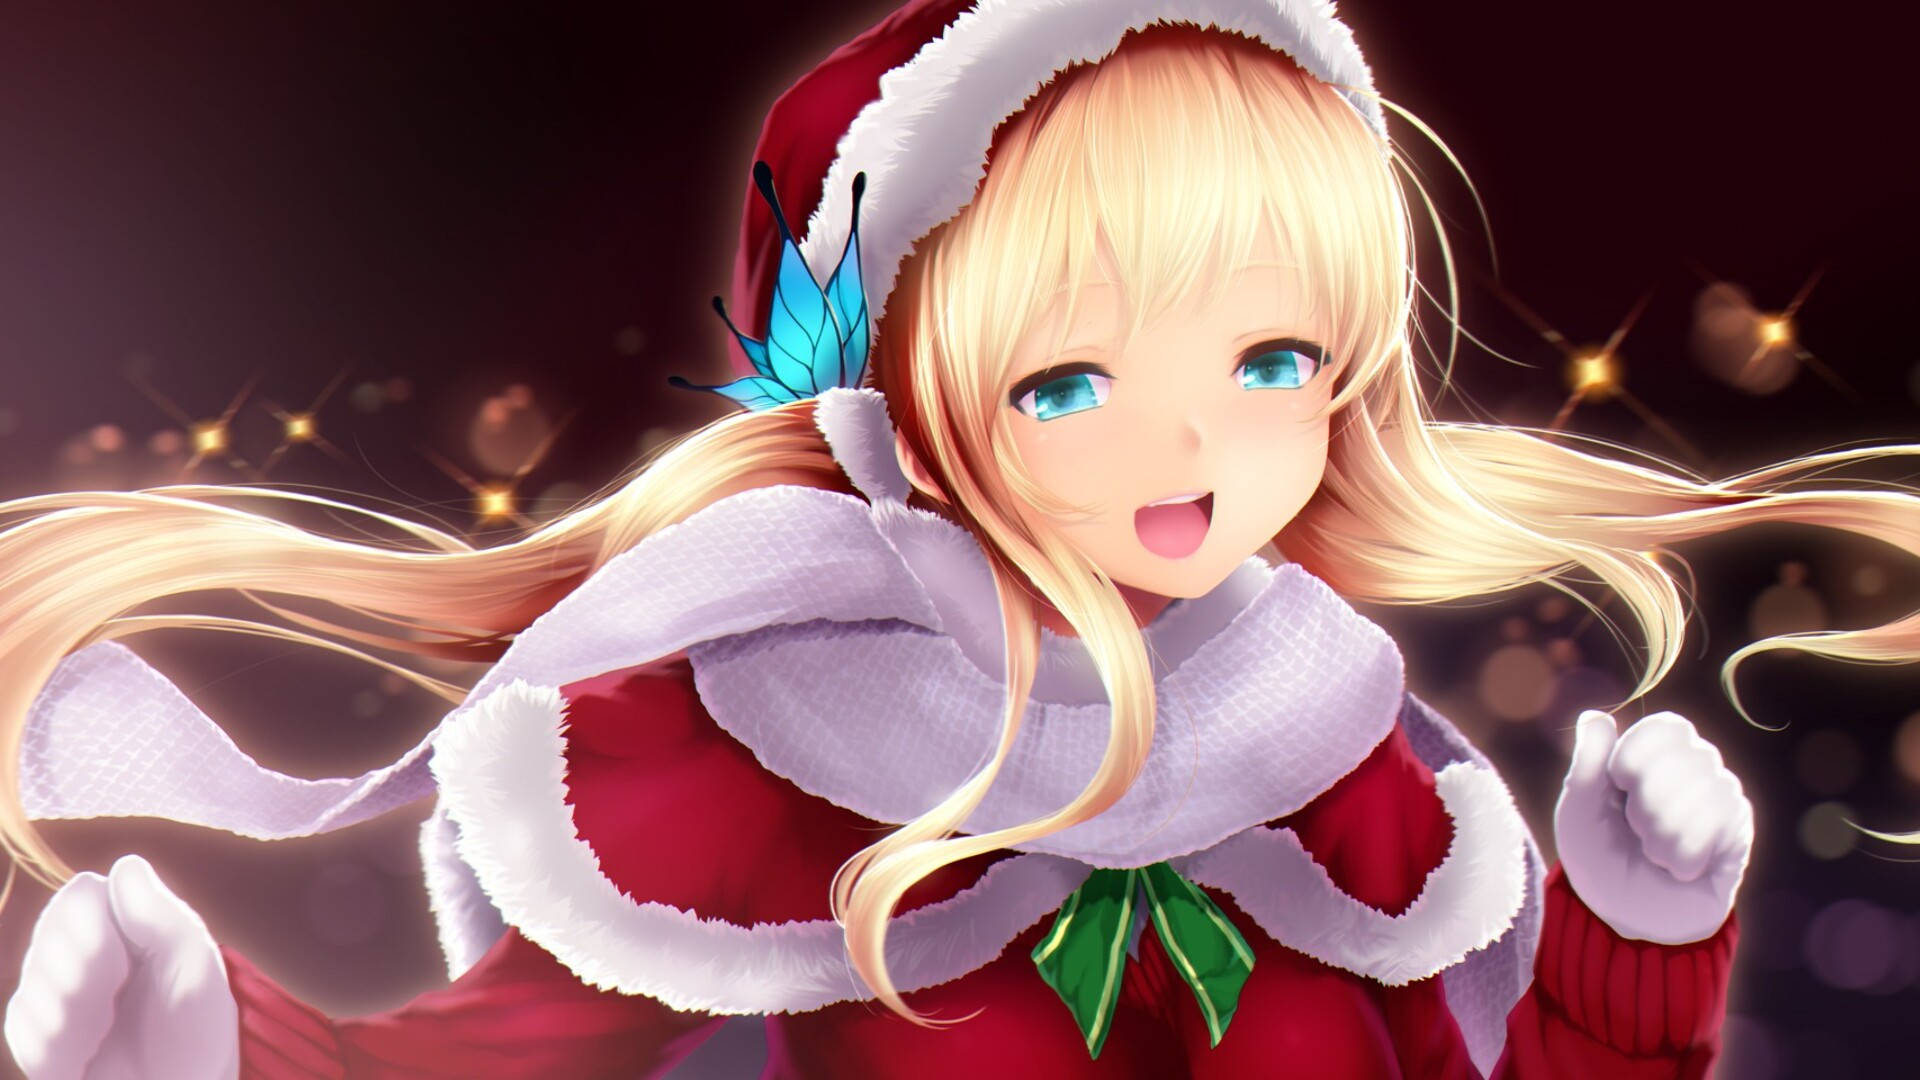 Blonde Girl Anime Christmas Digital Art